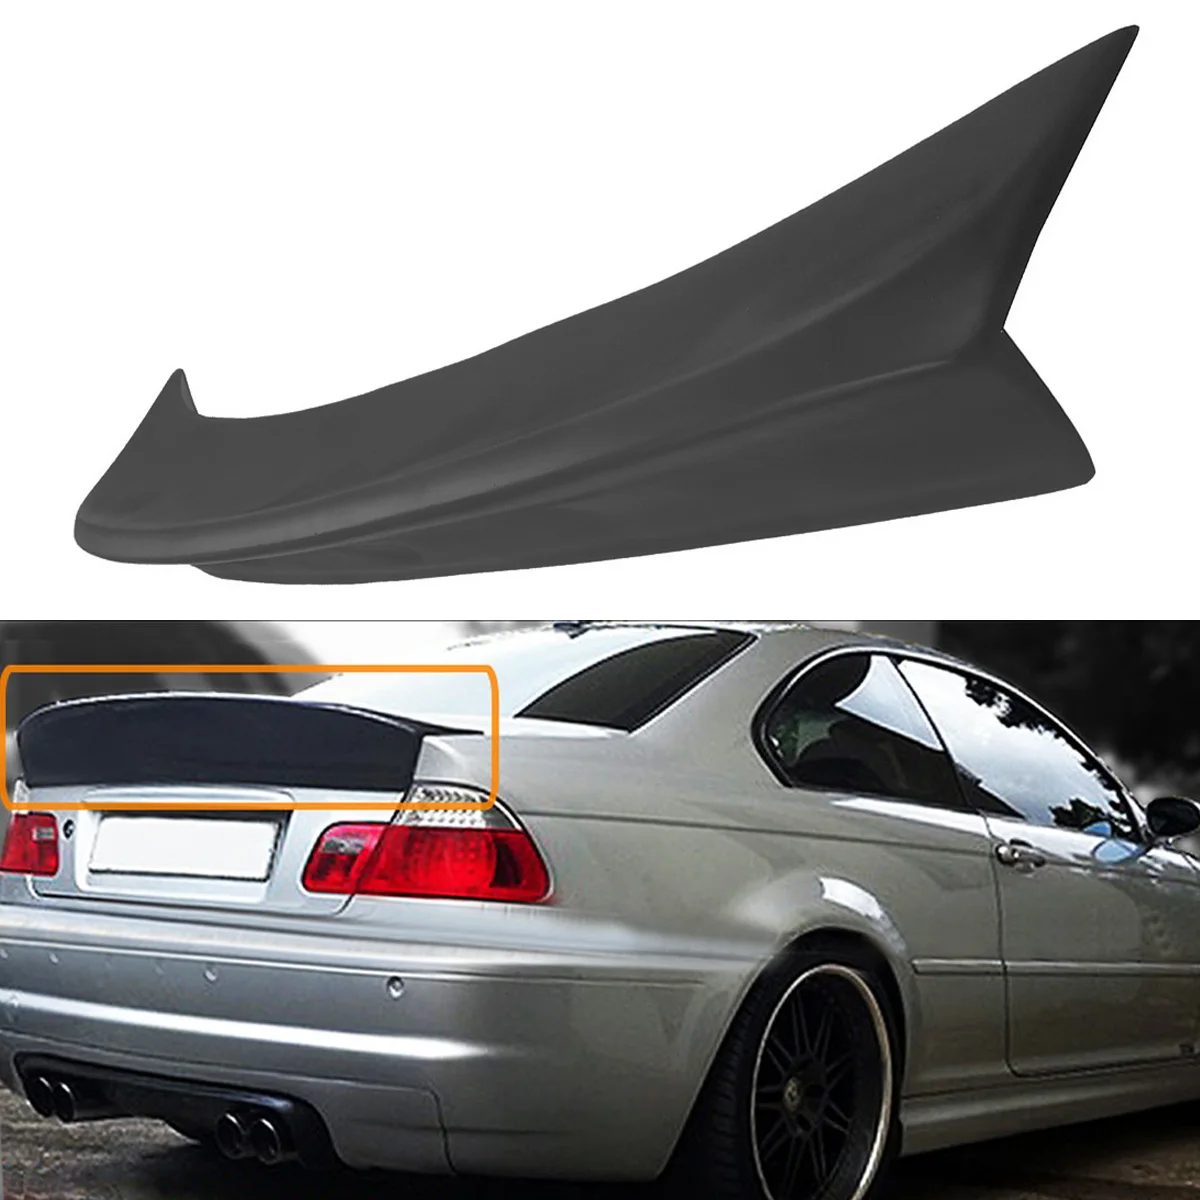 Задний полиуретановый багажник DuckBill HighKick спойлер крыло крышка спойлер для BMW E46 2DR модель M3 CSL Стиль 2001-2006 черный